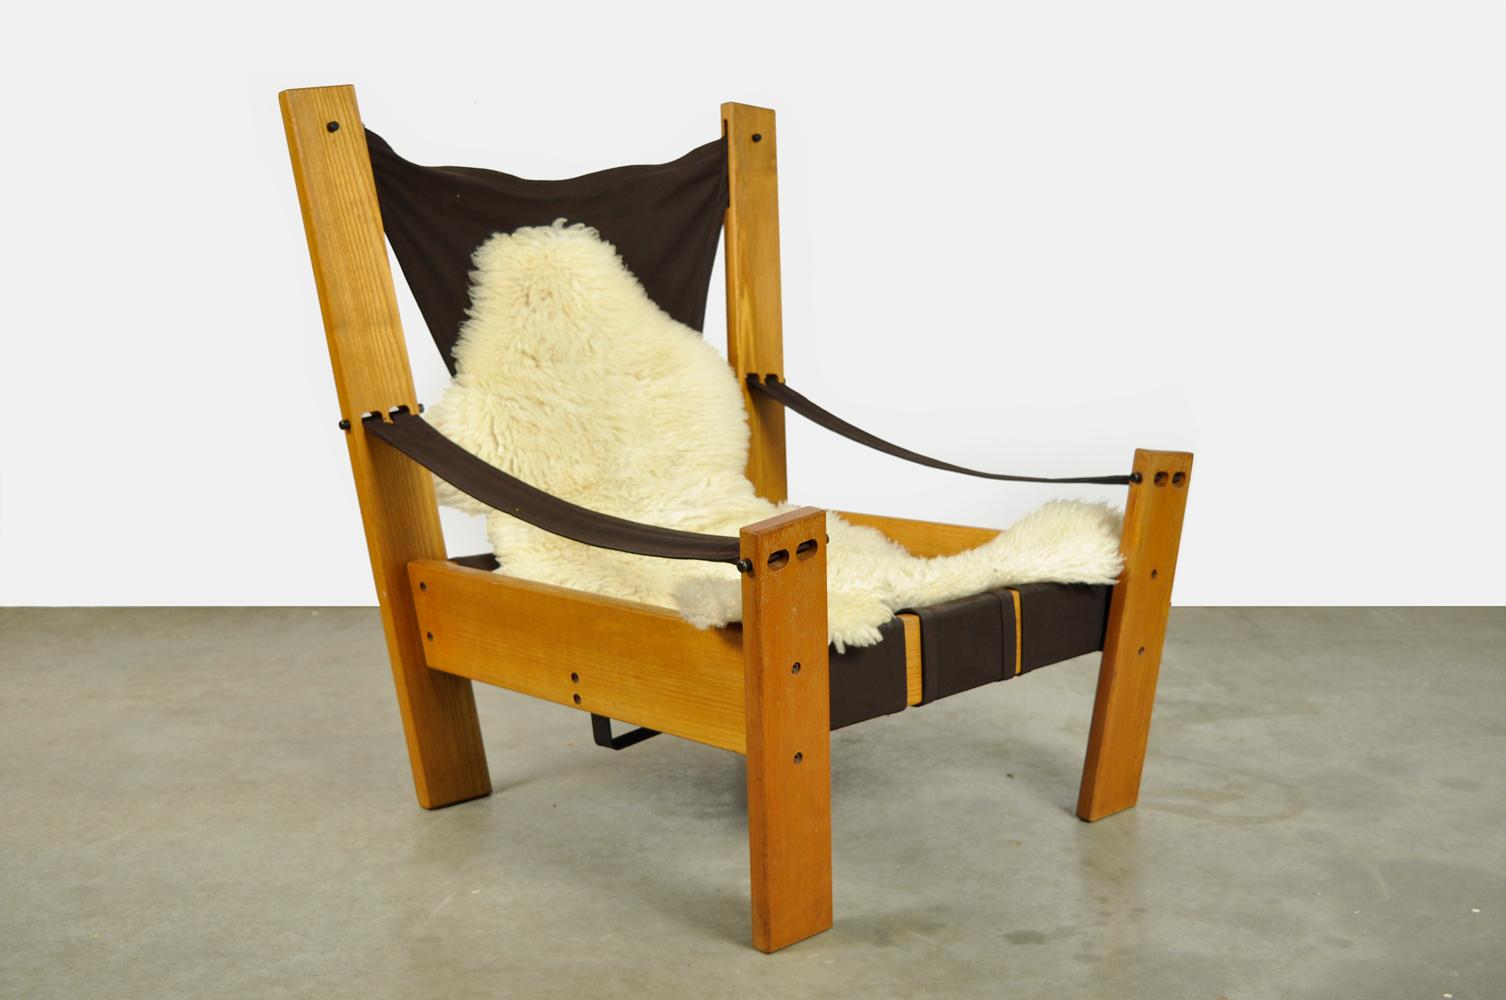 Spezieller niederländischer Loungesessel, entworfen von John de Haard und hergestellt von den Gebroeders Jonkers, 1960er Jahre. Der einzigartige Sessel hat einen Rahmen aus Kiefernholz mit einer hängenden Sitzfläche aus Segeltuch. Die